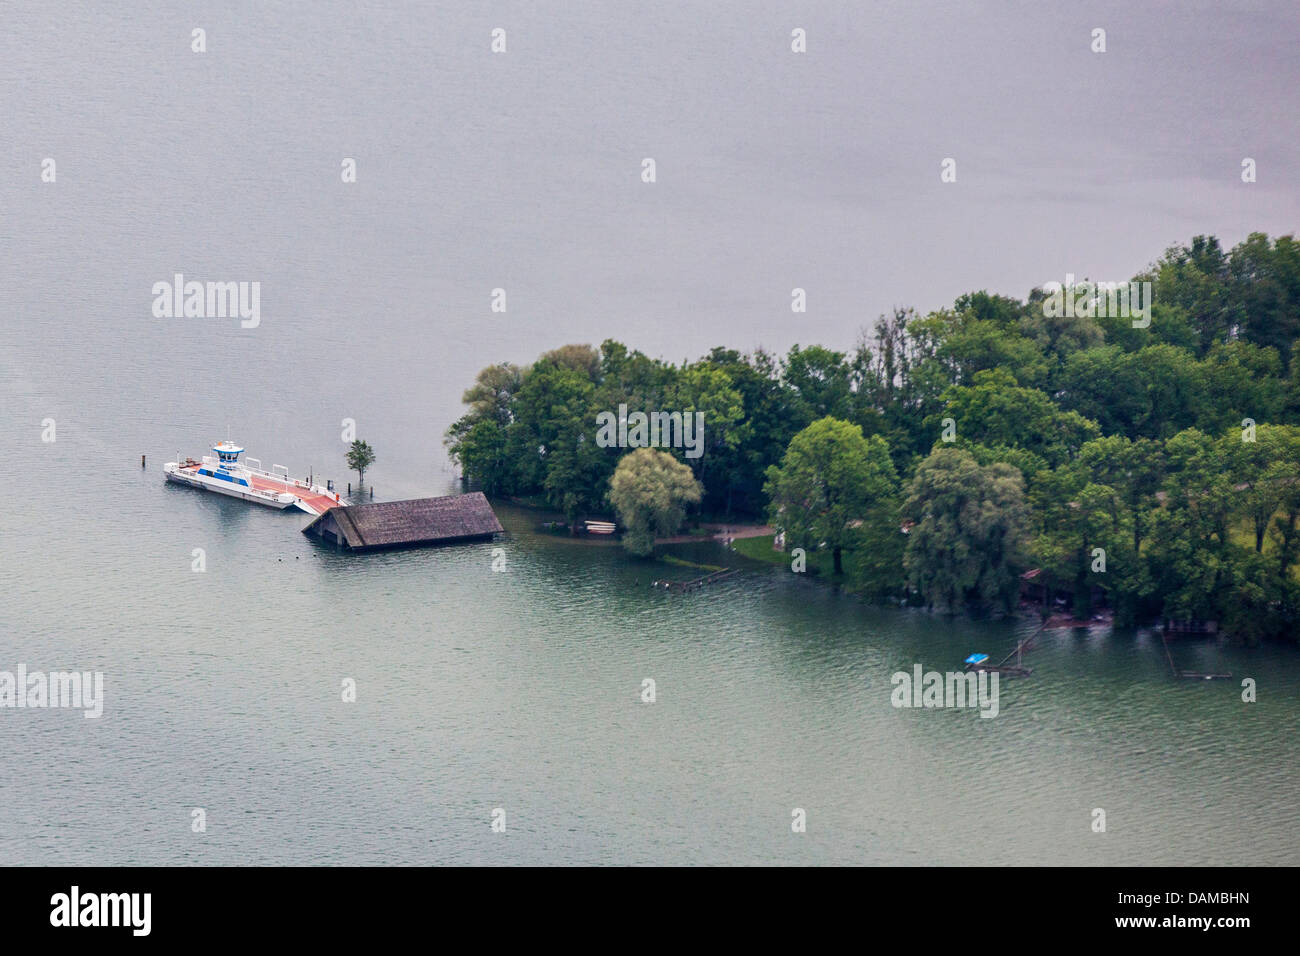 island Herreninsel in lake Chiemsee flooded in June 2013, Germany, Bavaria, Lake Chiemsee Stock Photo